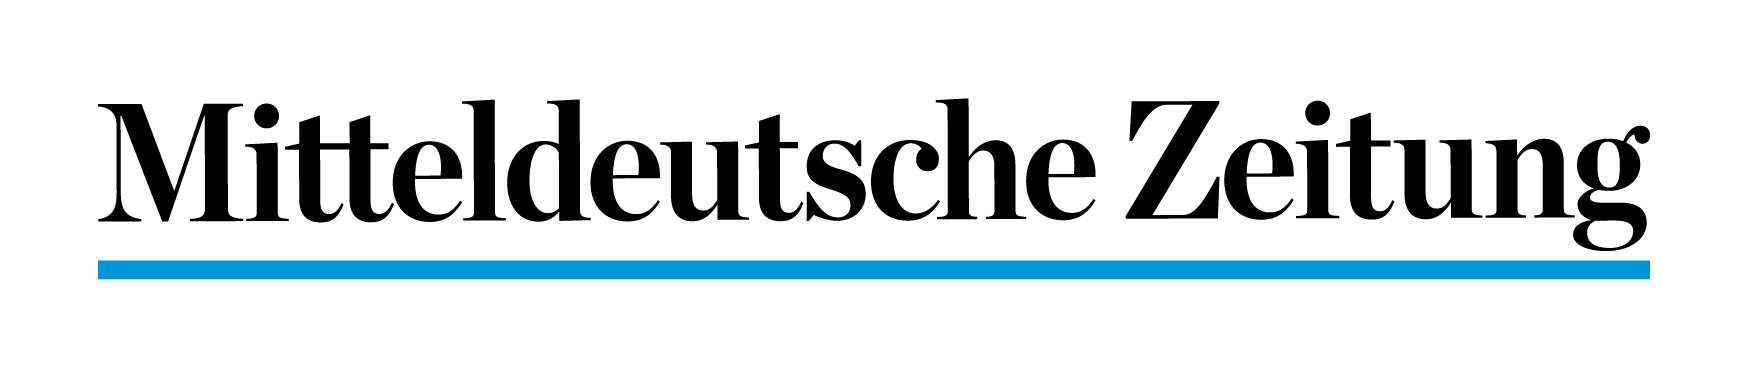 Mitteldeutsche Zeitung_Wortmarke-mit-Unterbalke-rgb_Zeichenfläche 1